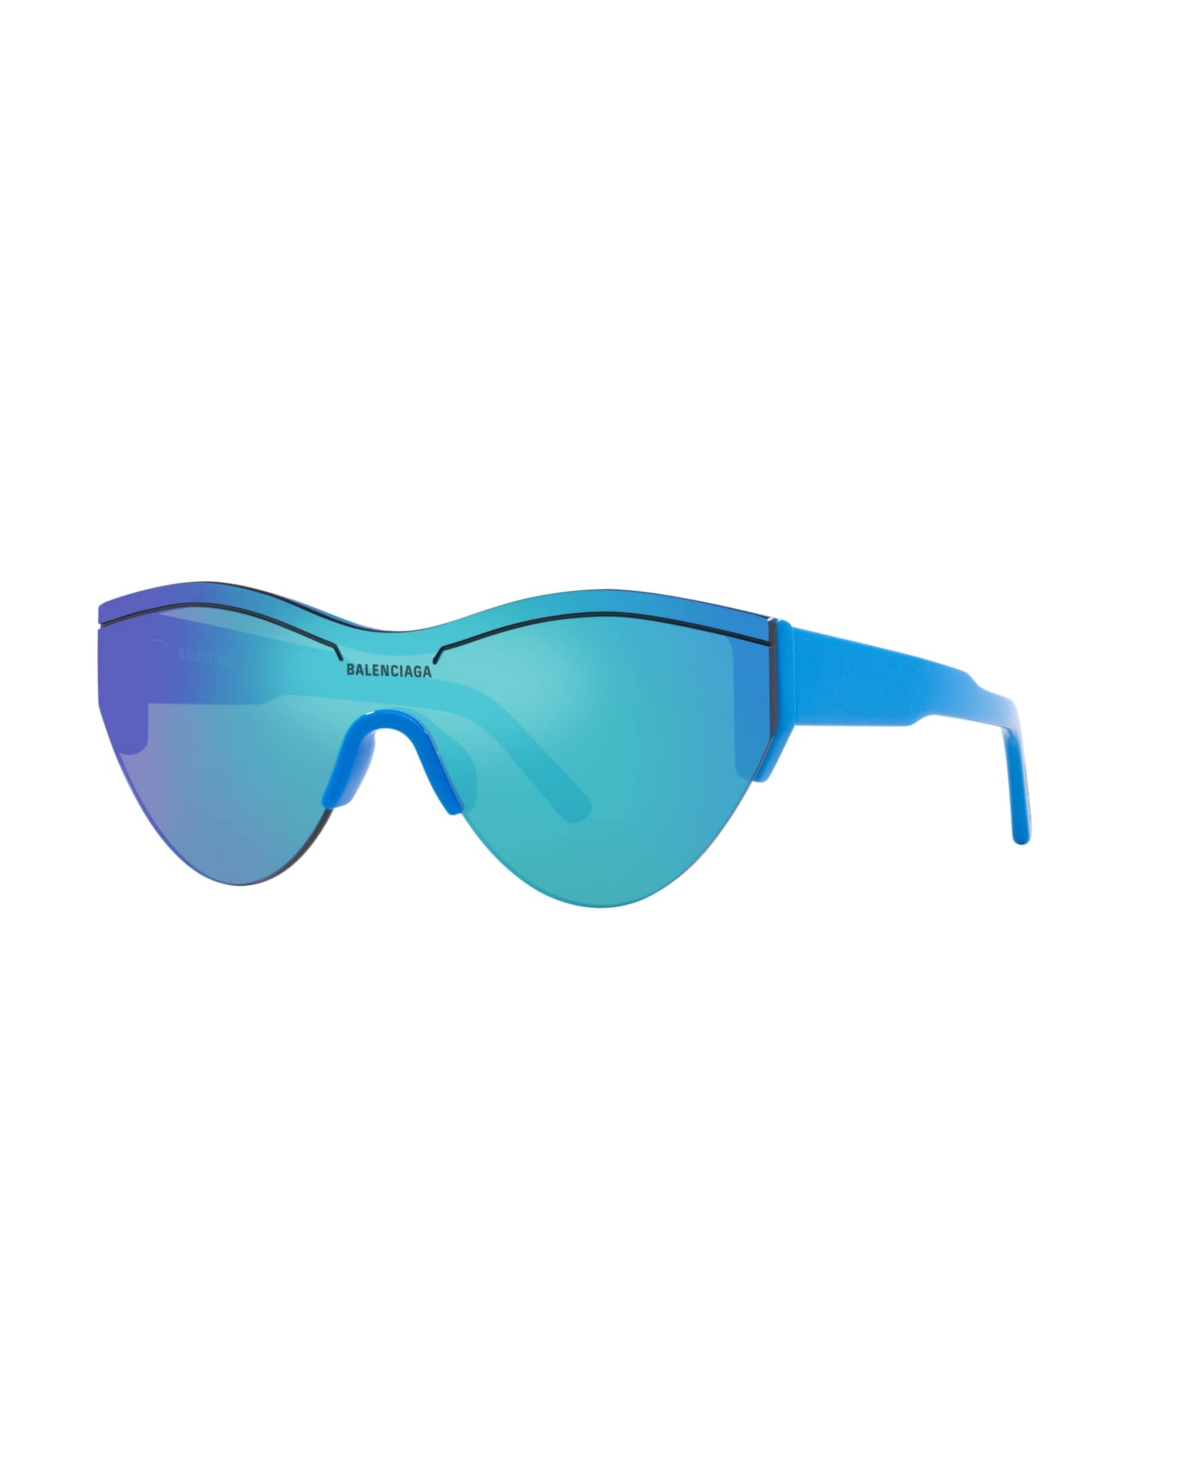 Balenciaga Unisex Sunglasses, Bb0004s 6e000185 In Blue